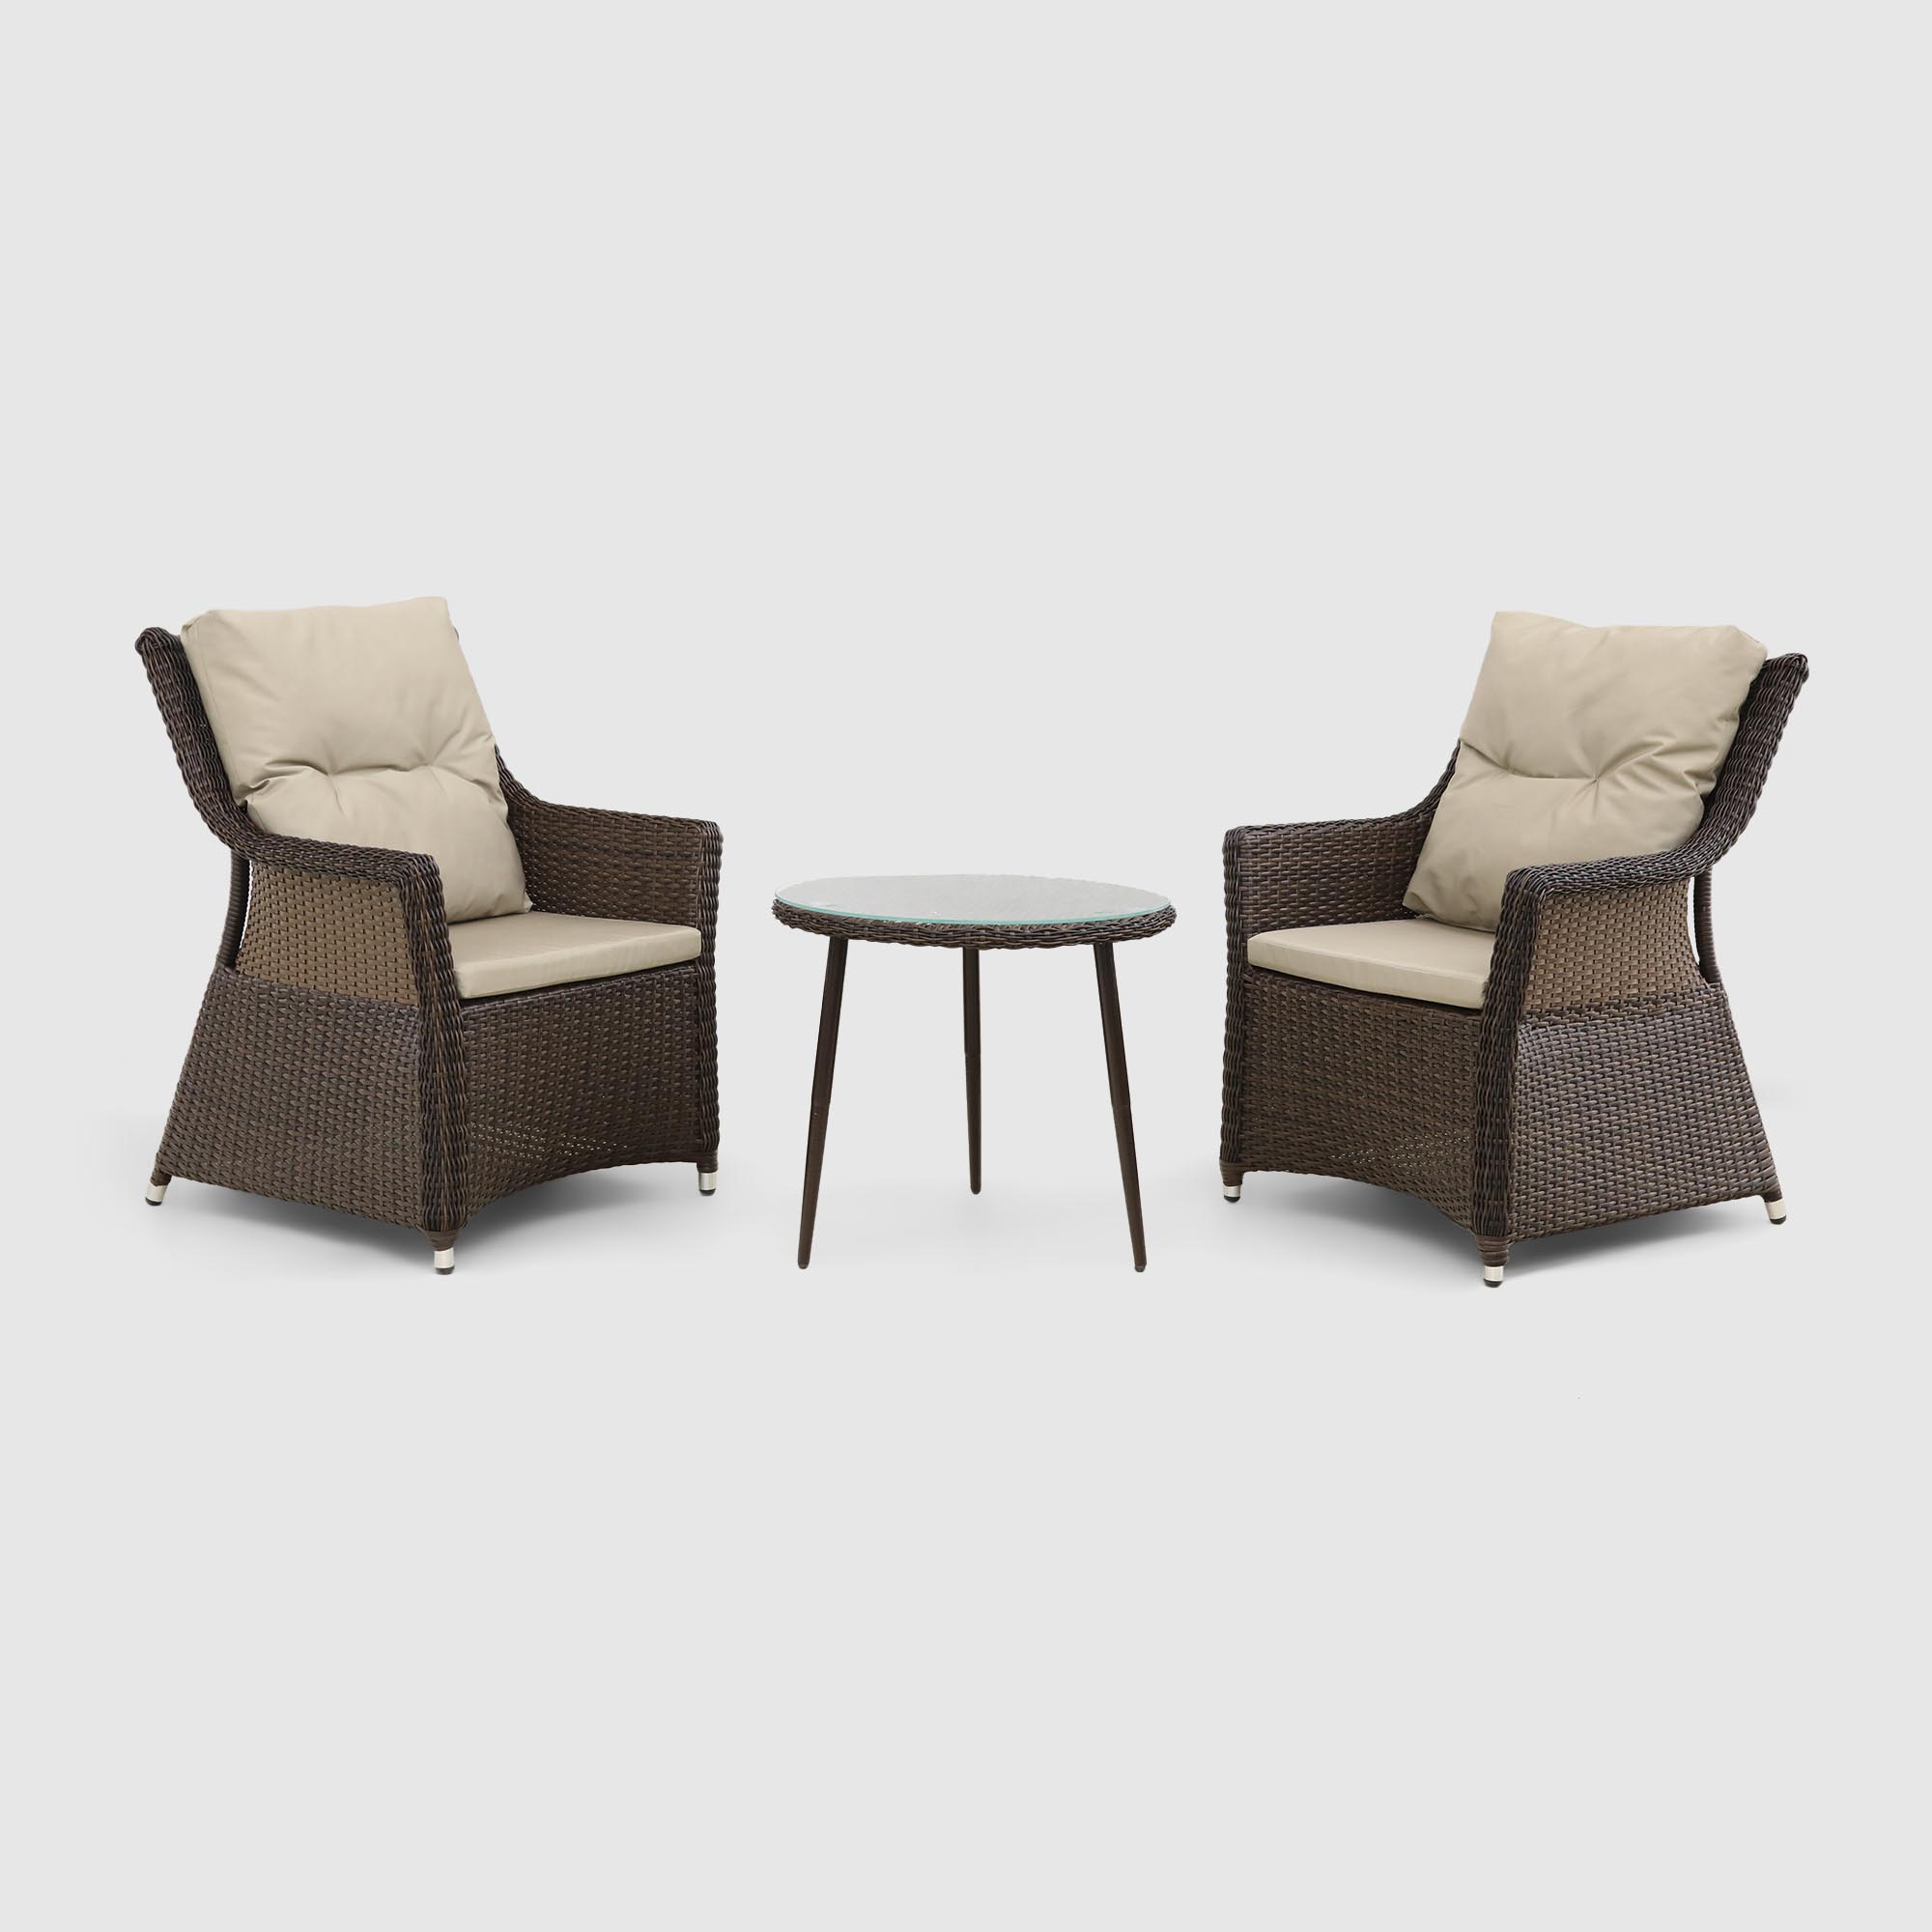 Комплект мебели Ns Rattan 2 кресла и столик, цвет коричневый, размер 65х90х80